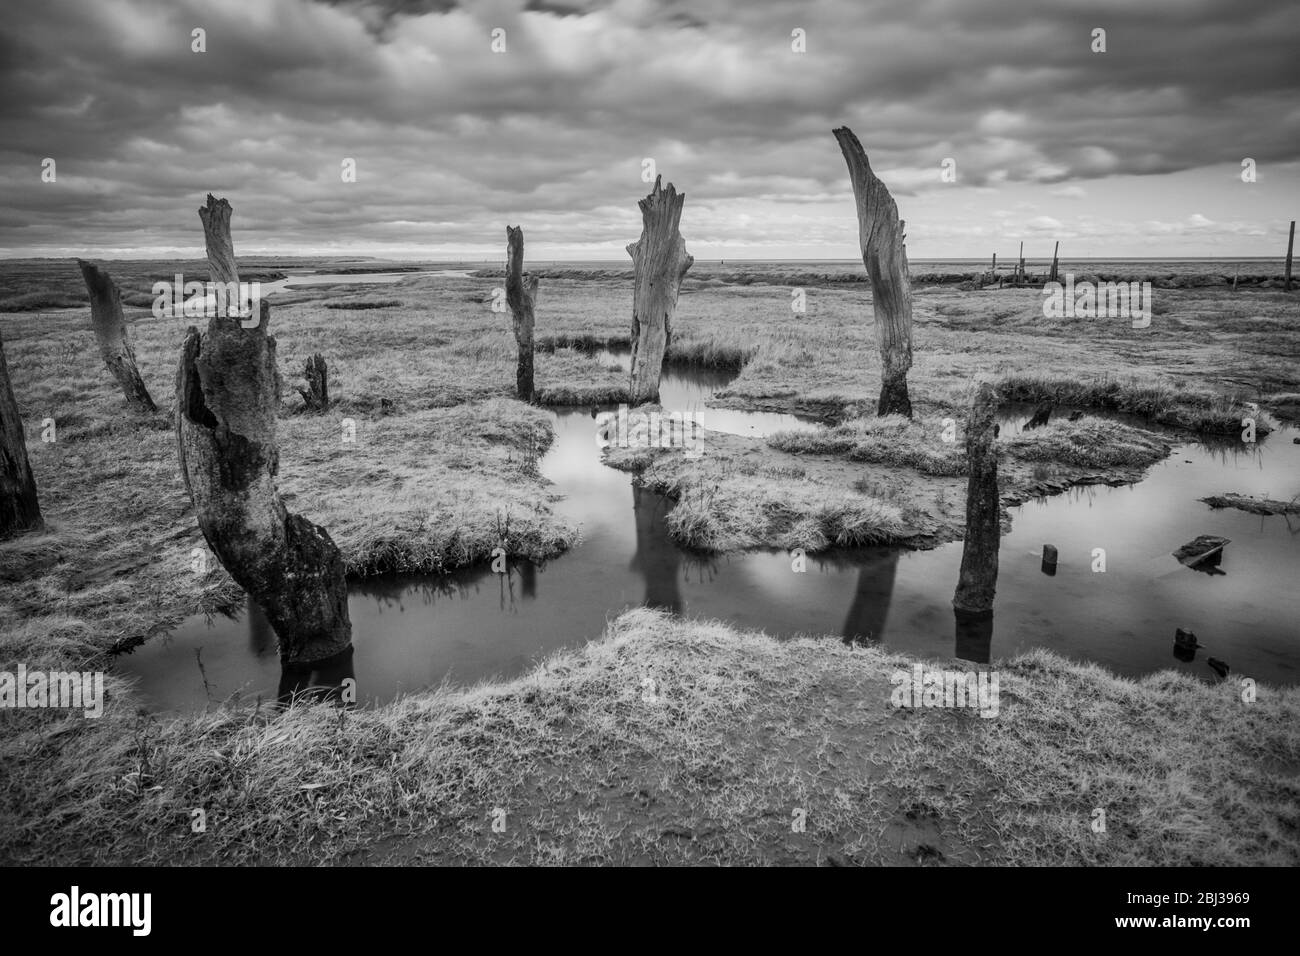 Anciens pieux de bois dans le marais saltmarsh, Thornham, Norfolk, Angleterre. Image infrarouge noir et blanc. Banque D'Images